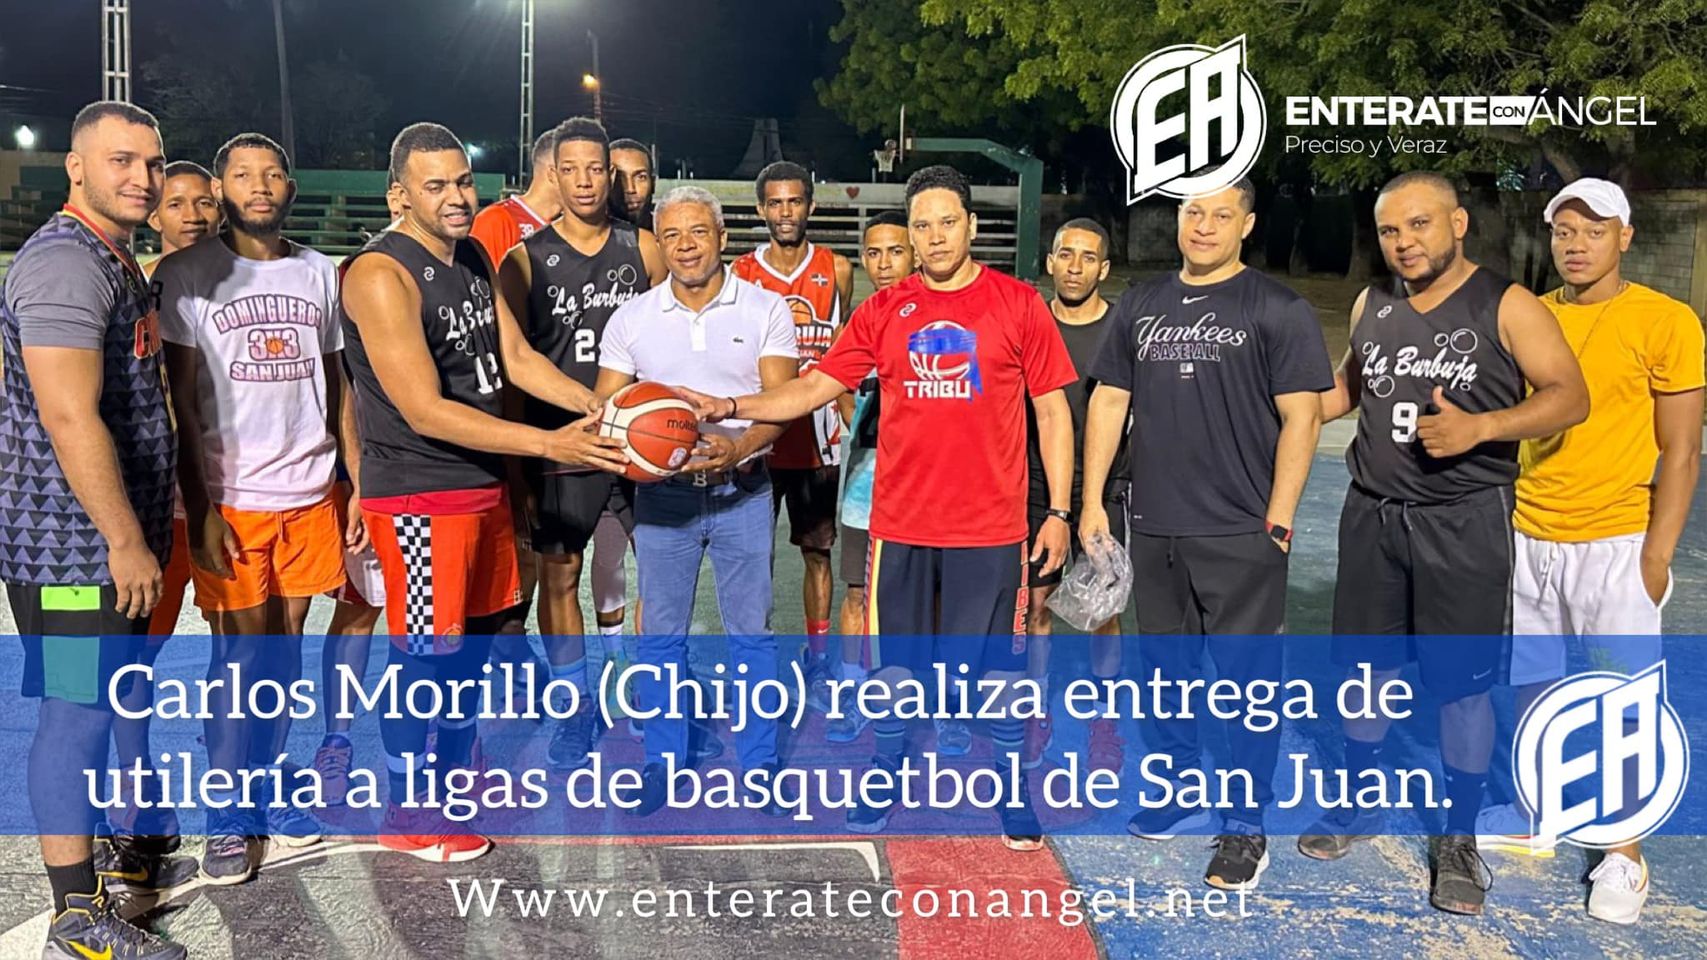 Carlos Morillo (Chijo) realiza entrega de utilería a ligas de basquetbol de San Juan